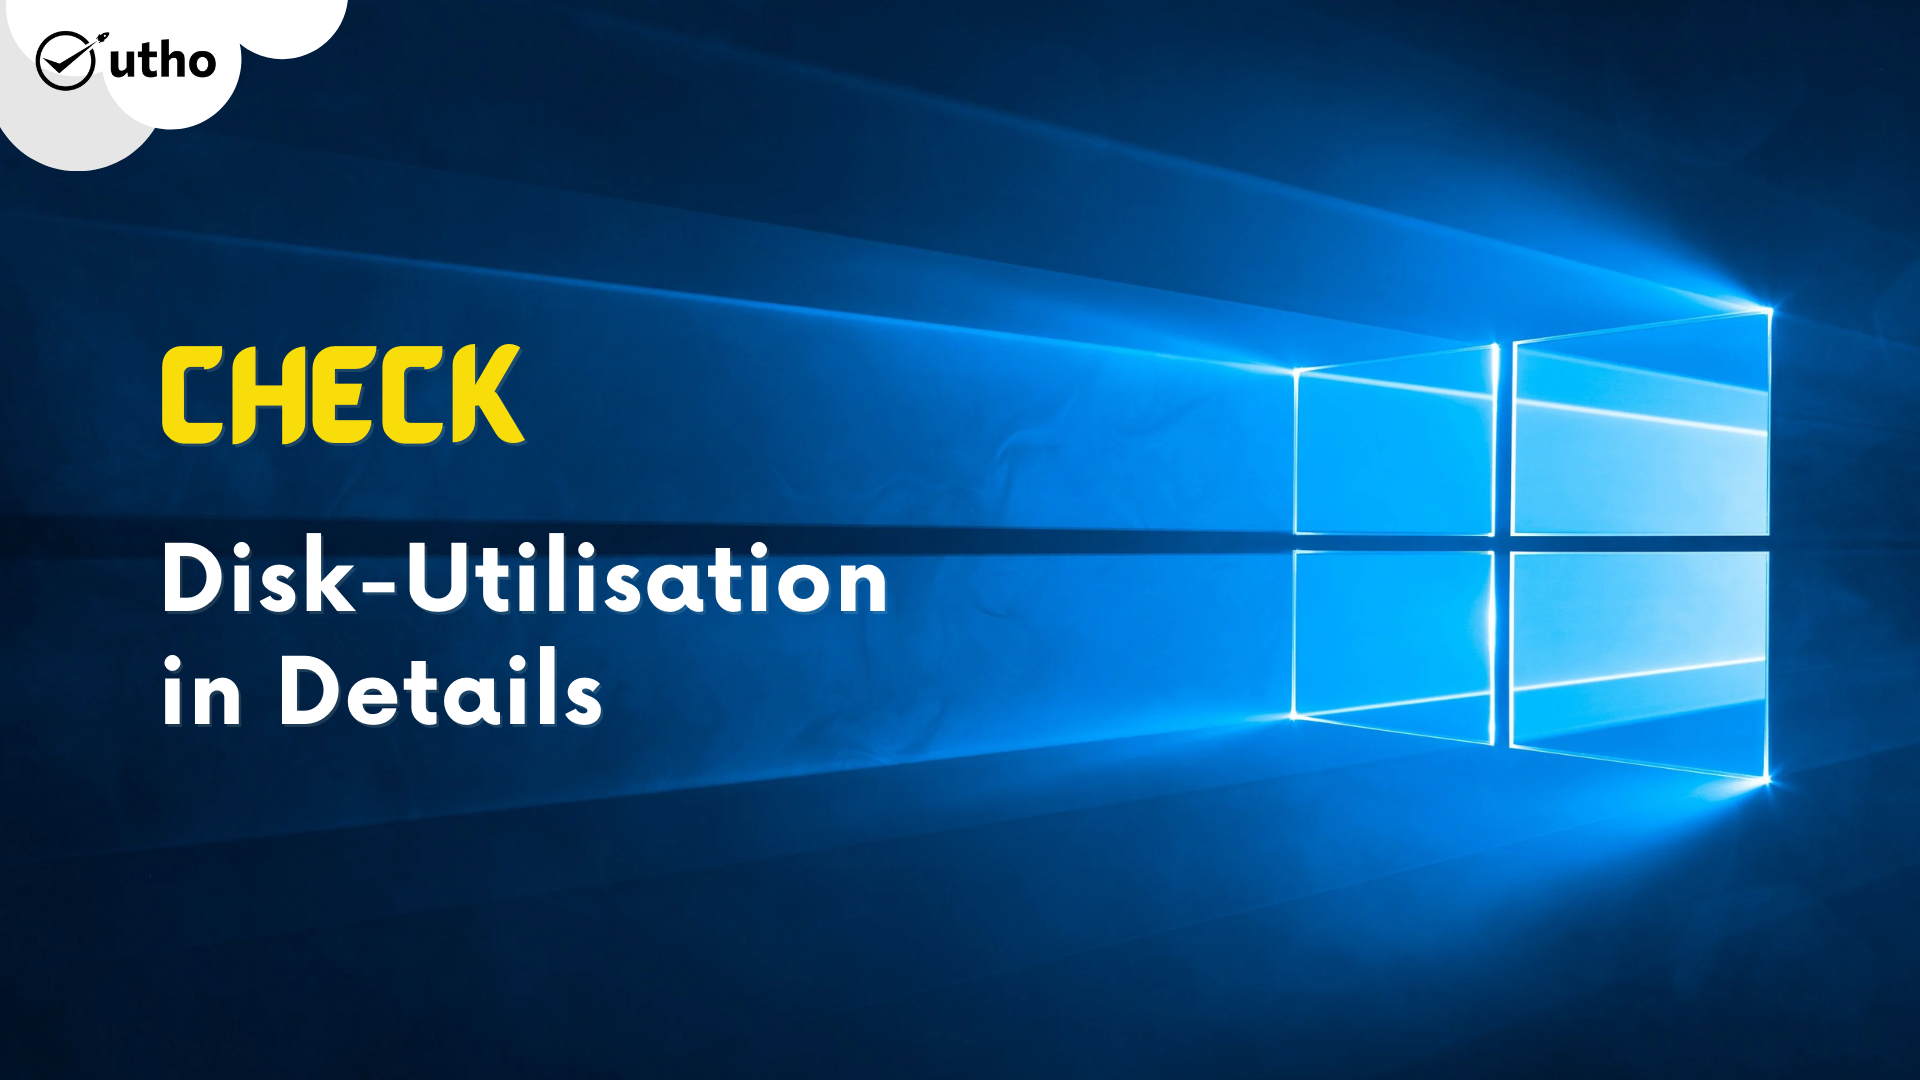 Check Disk-utilisation in details on Windows